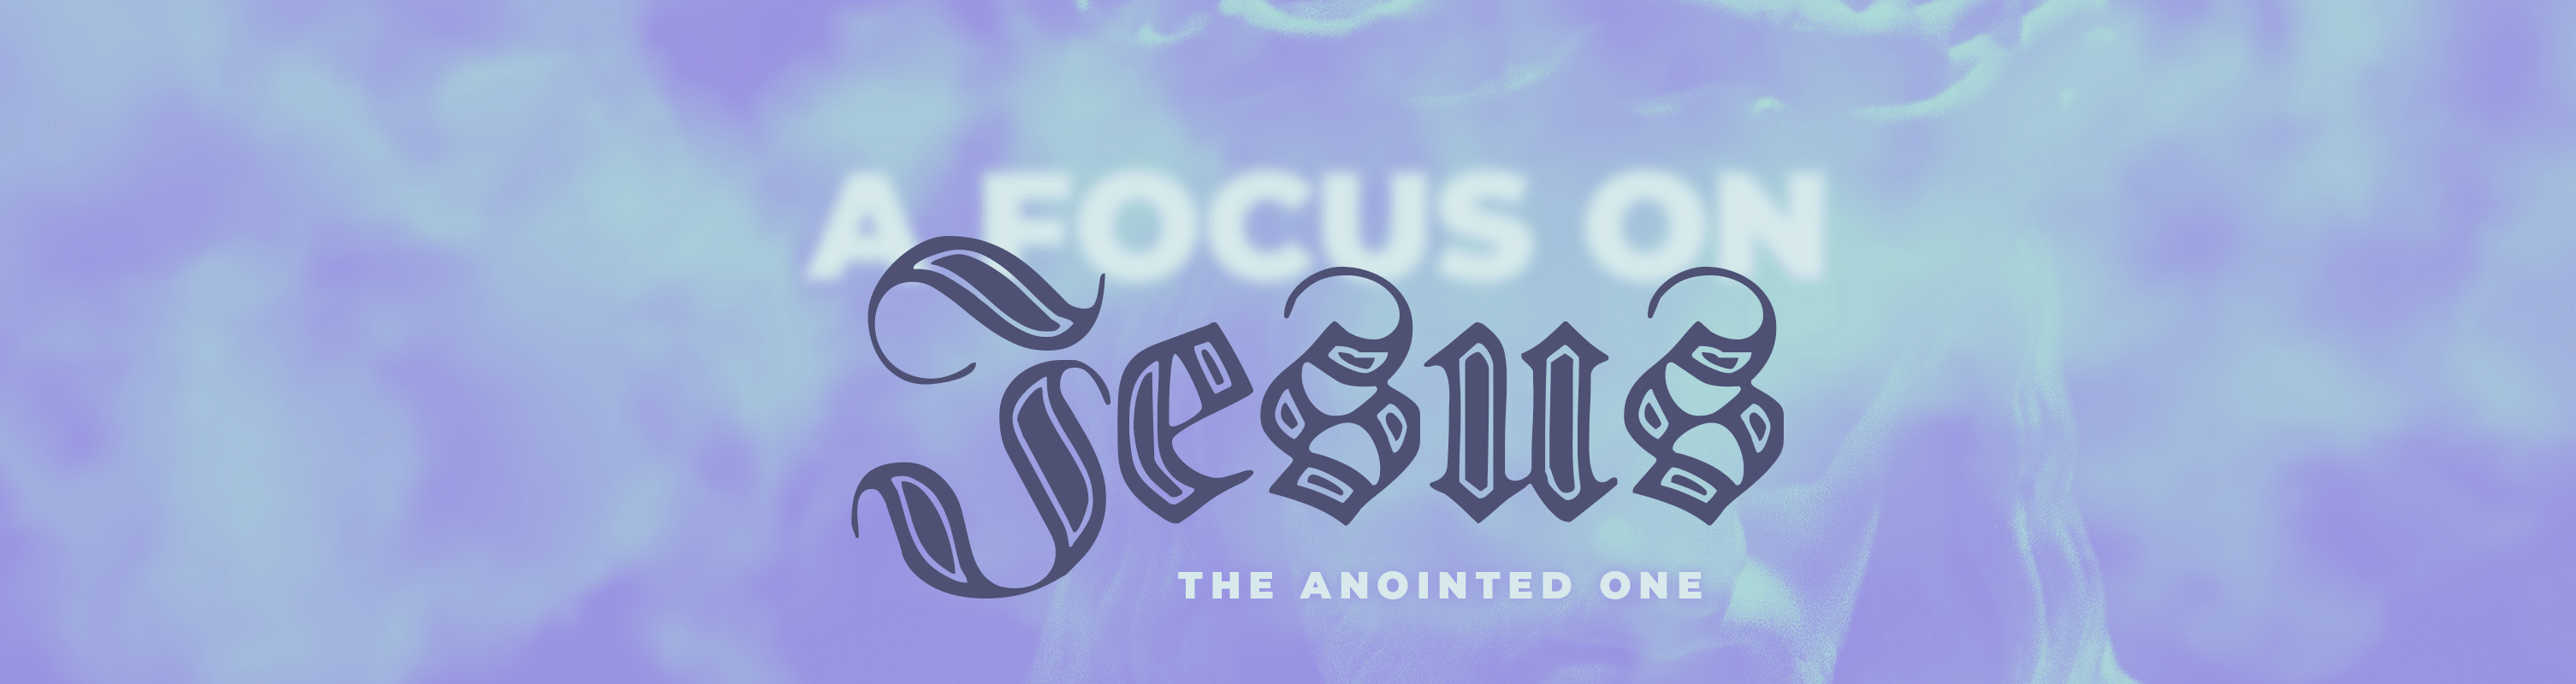 A-Focus-on-Jesus-website